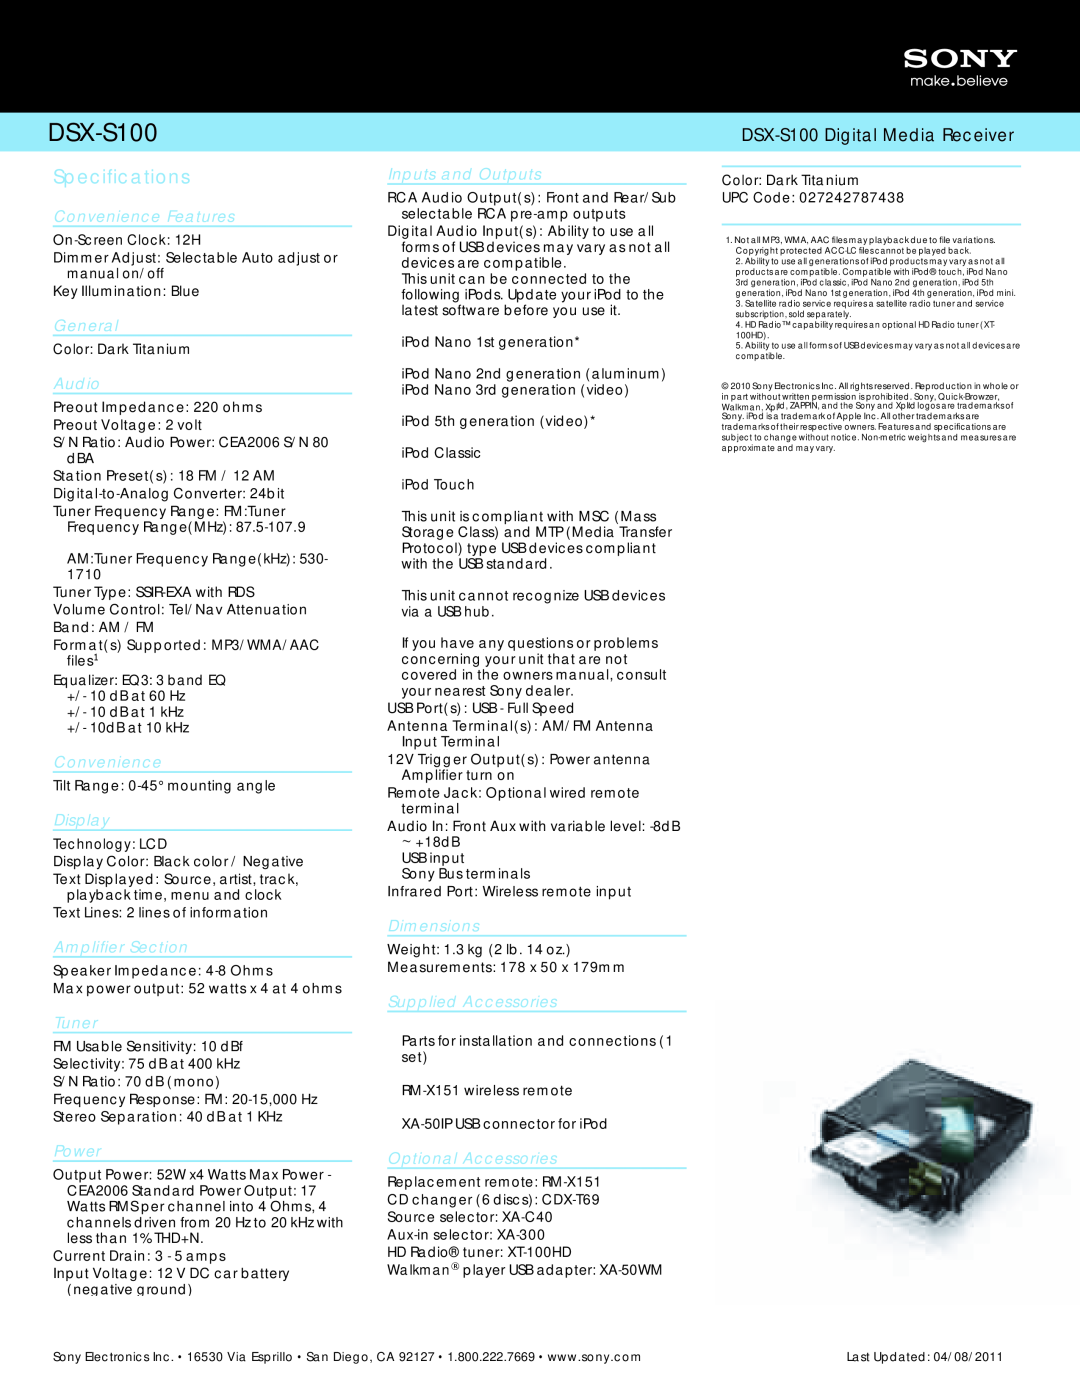 Sony LV213, TC118, LV216, LV215, TB216, LV217, LV211, AW1, DEW210, LV218, LV219 Specifications, DSX-S100 Digital Media Receiver 